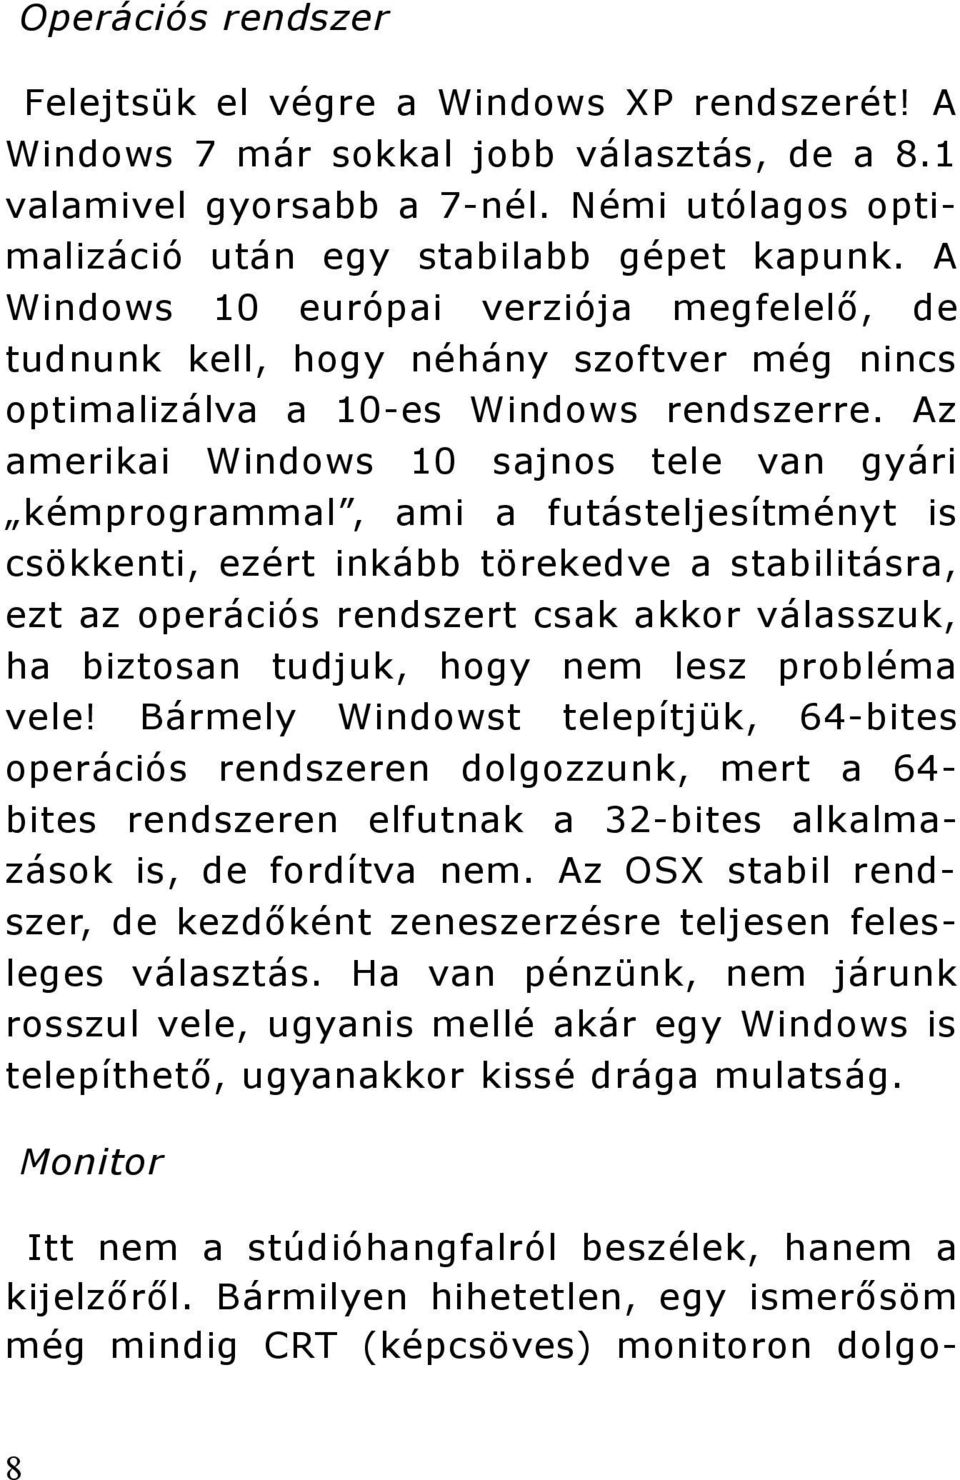 Az amerikai Windows 10 sajnos tele van gyári kémprogrammal, ami a futásteljesítményt is csökkenti, ezért inkább törekedve a stabilitásra, ezt az operációs rendszert csak akkor válasszuk, ha biztosan